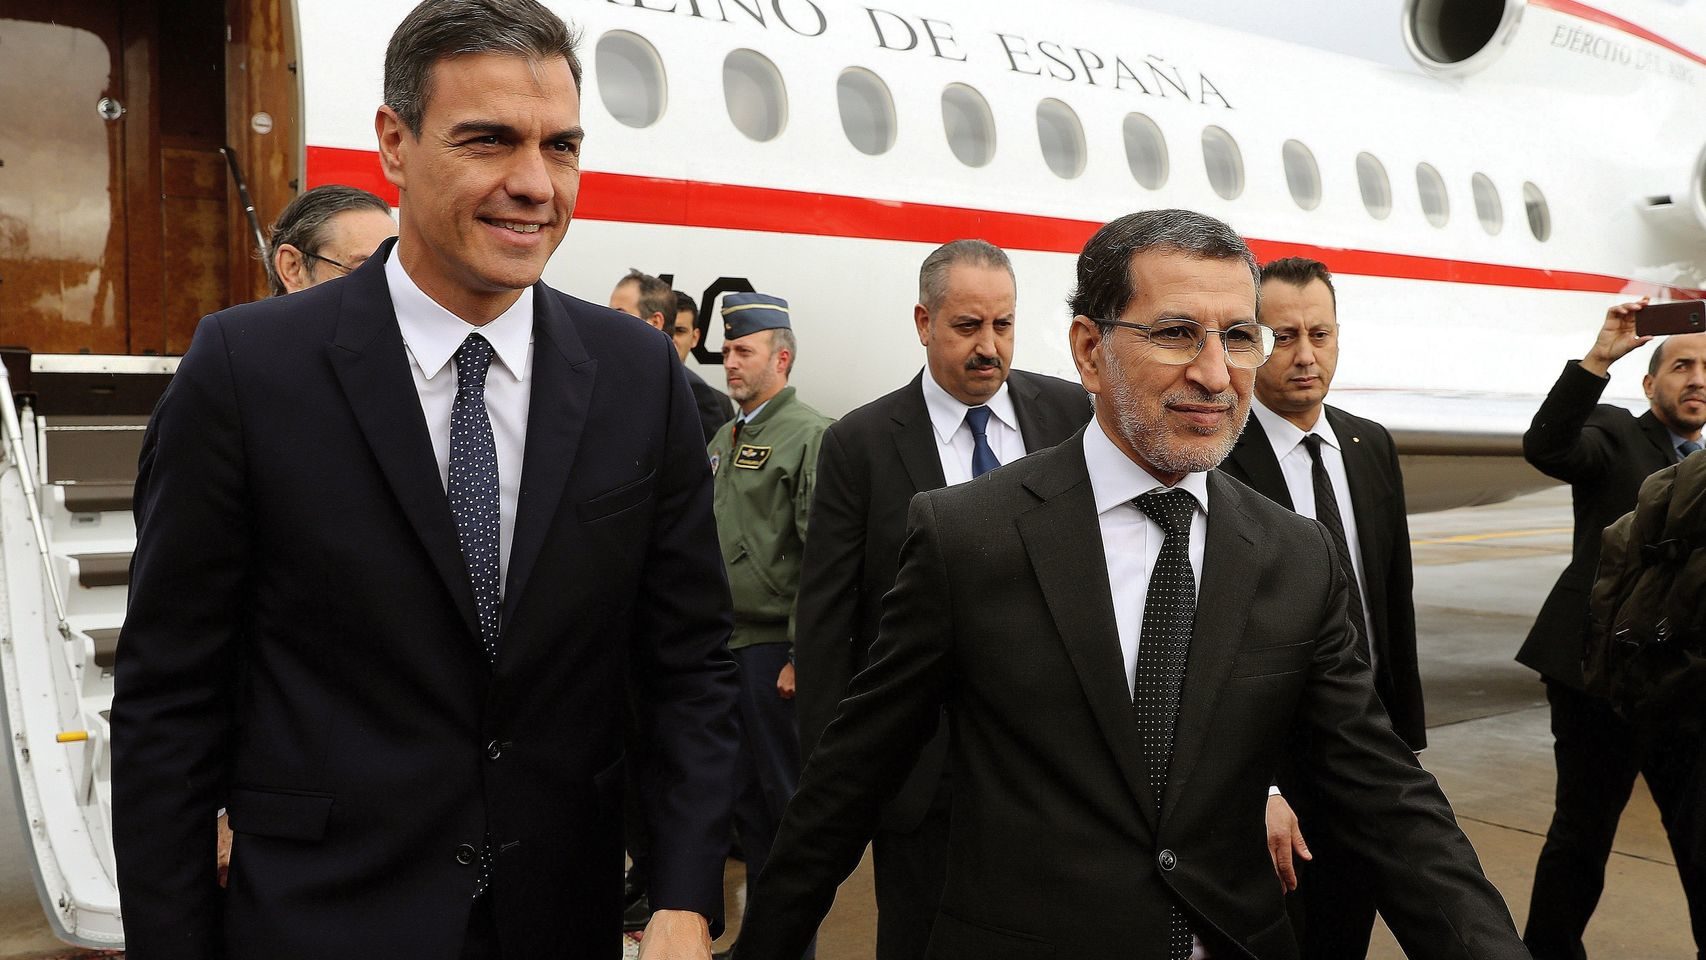 Marruecos hace oficial la ampliación de sus aguas territoriales, con España paralizada en estado de alarma